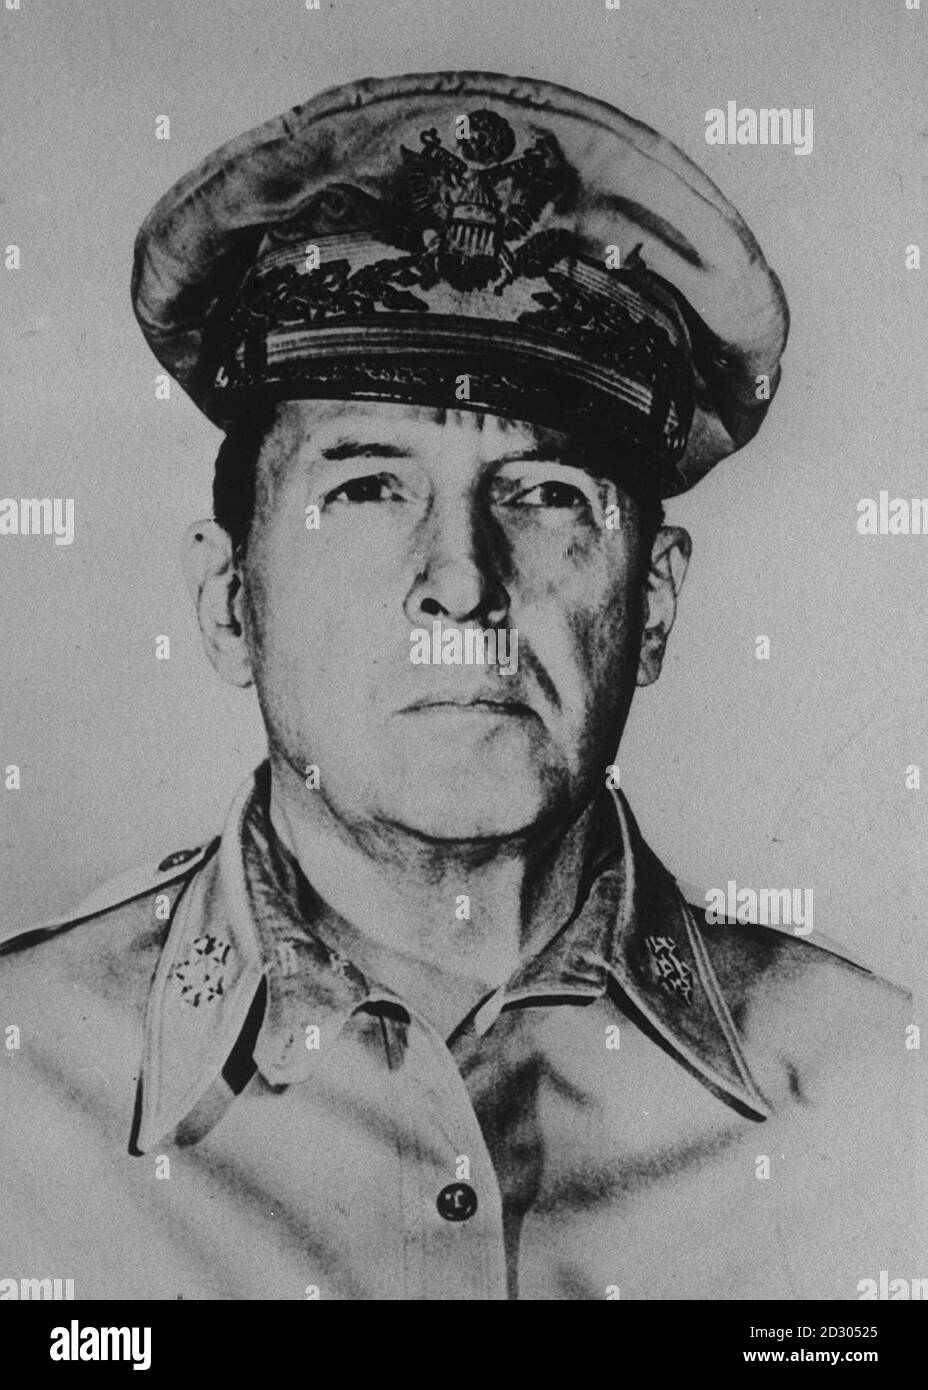 General Douglas MacArthur (1880-1964). Se convirtió en general comandante de las fuerzas armadas de los EE.UU. En el Pacífico durante la Segunda Guerra Mundial (1944) y aceptó la rendición de Japón, la ocupación aliada de la que él comandó (1945-51). * fue comandante en jefe de las fuerzas de las Naciones Unidas en Corea (1950-51) hasta que fue destituido por el Presidente Truman. Foto de stock